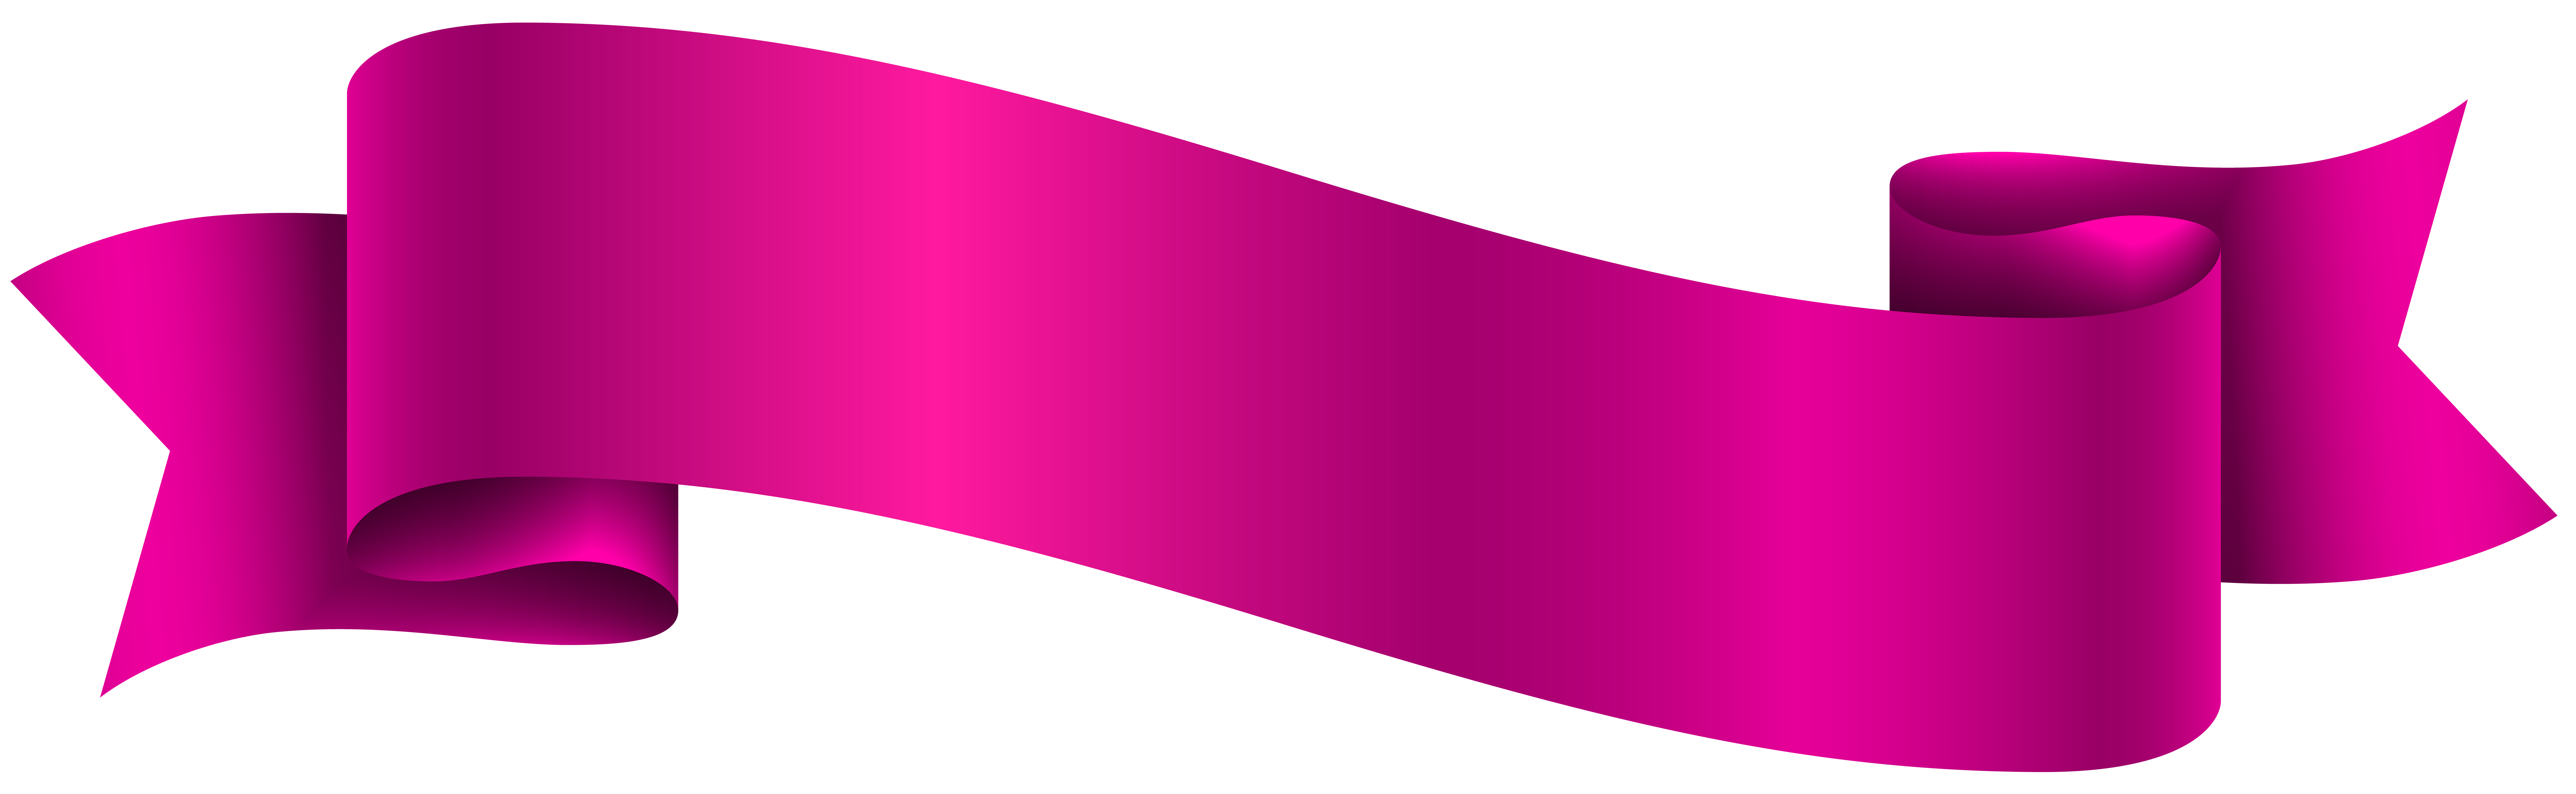 Pink Banner Transparent PNG Clip Art Image.